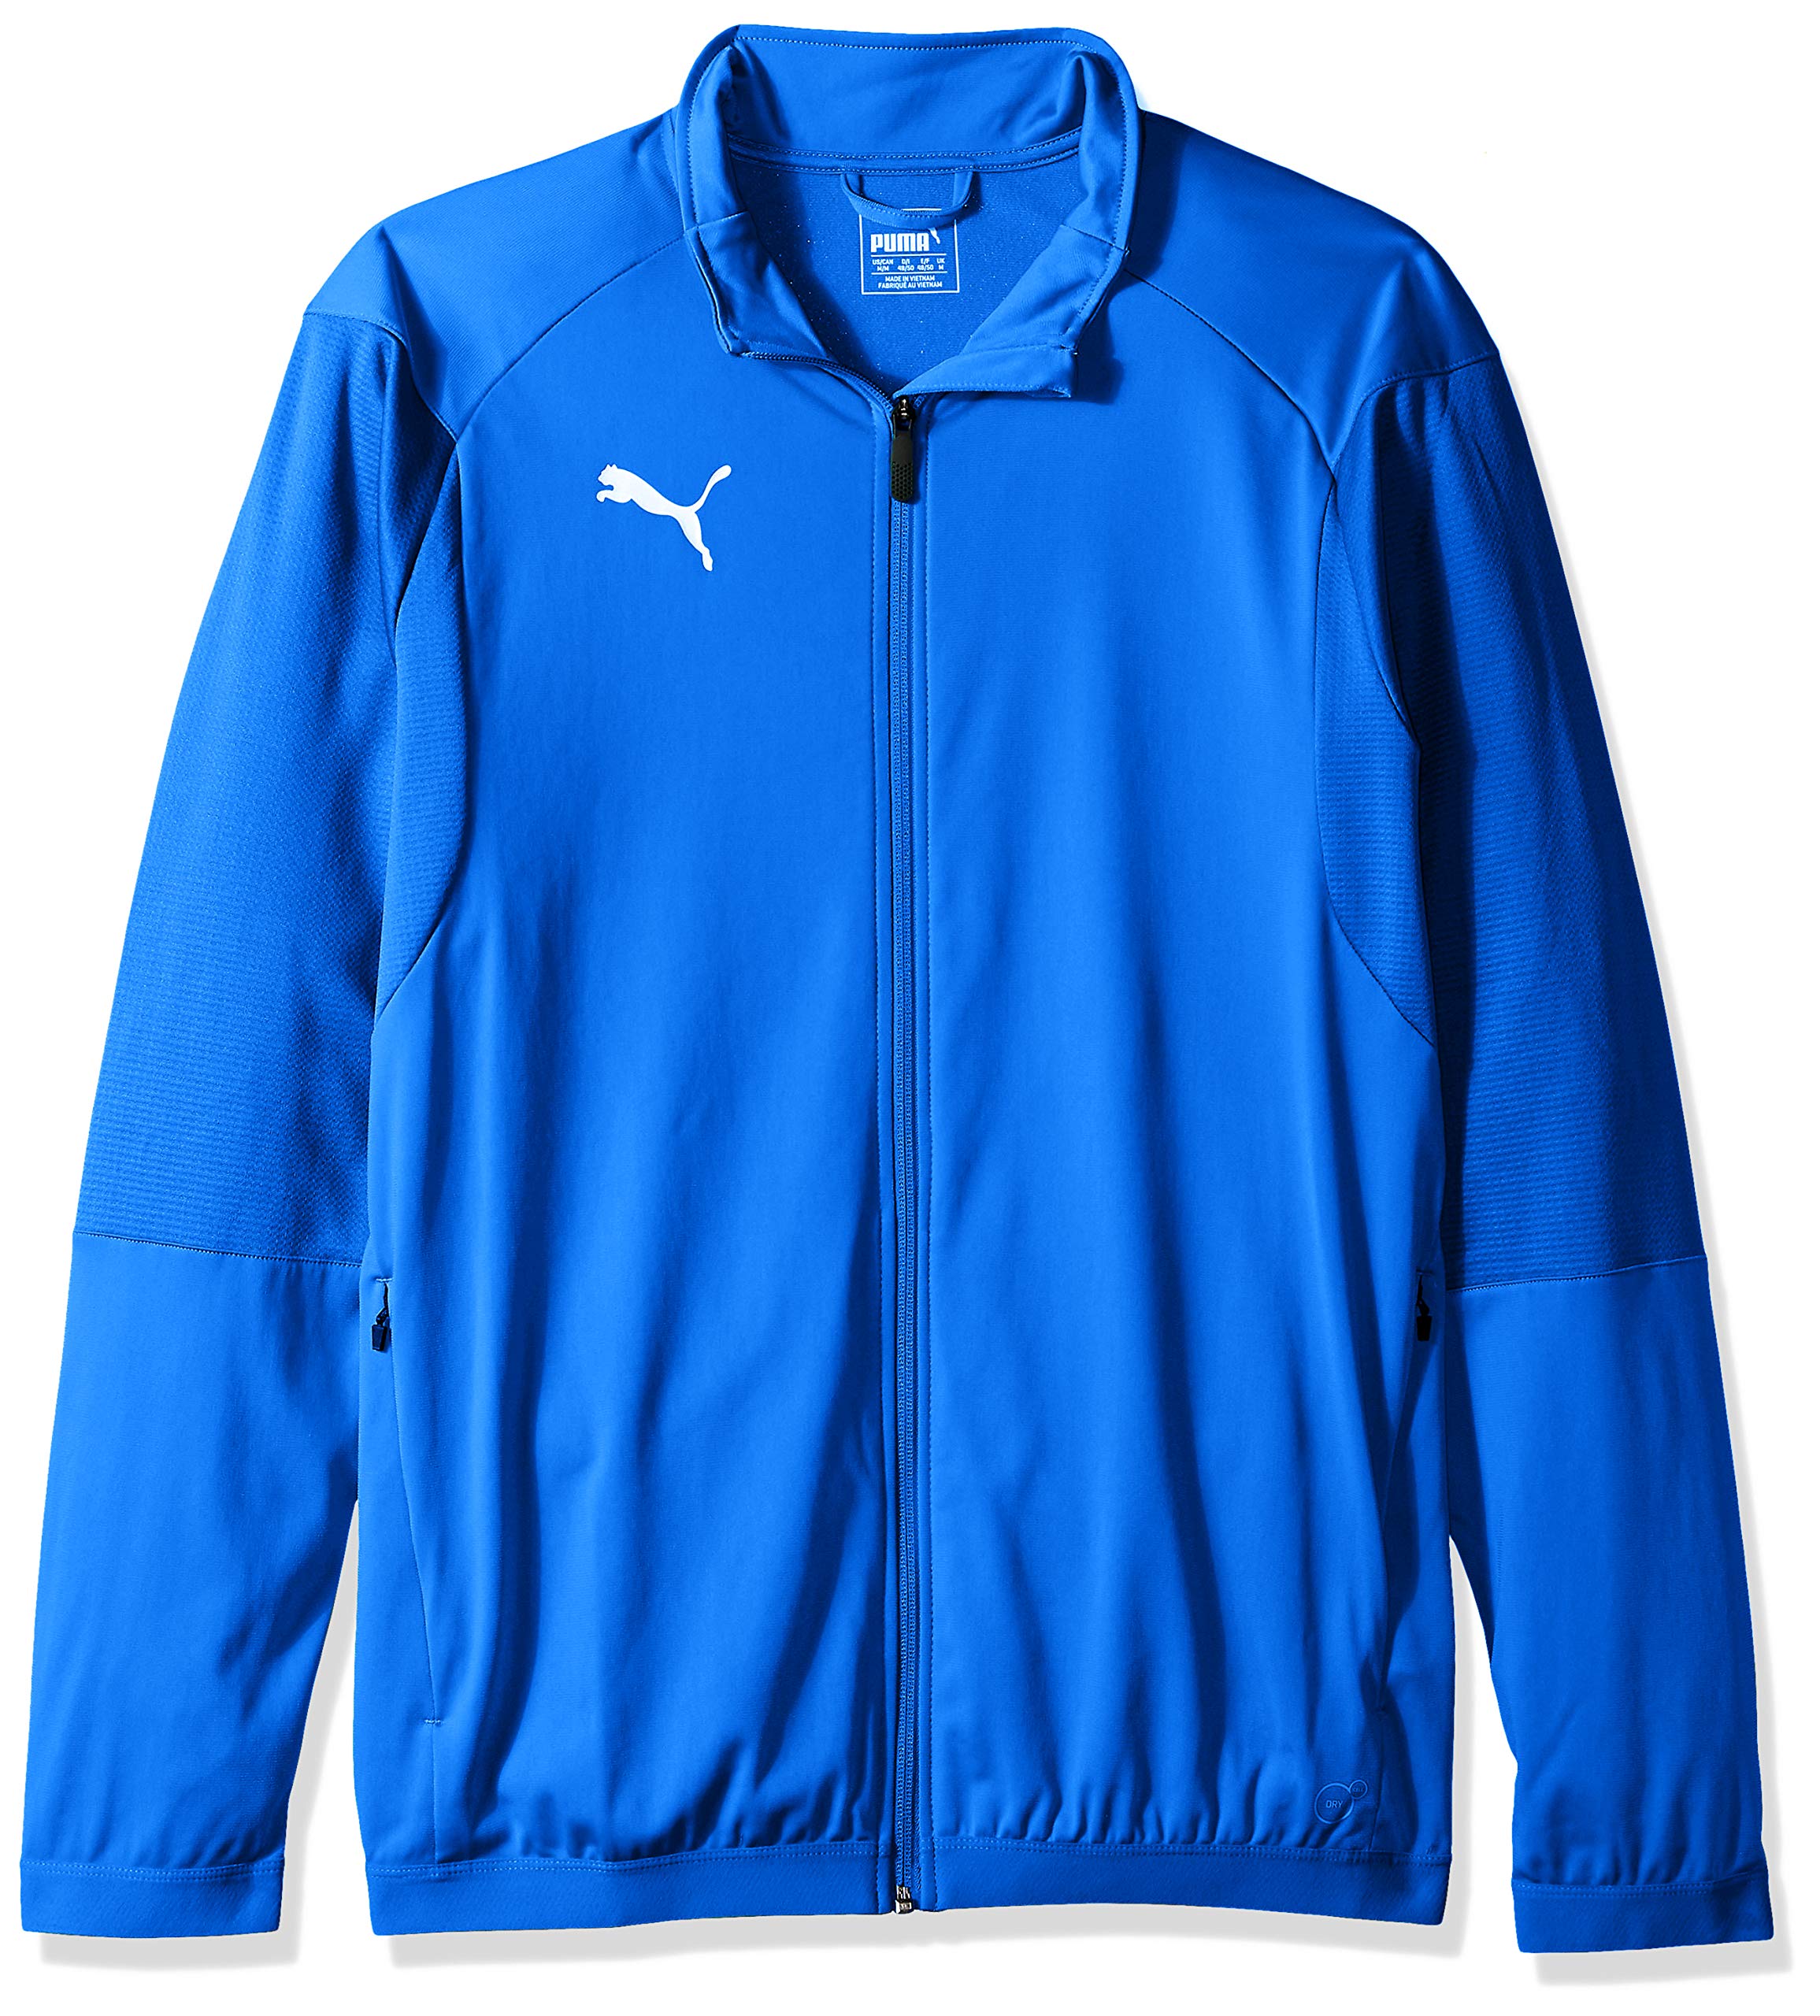 PUMA Mens Liga Training Jacket - Electric Blue Lemonade/White - XX-Large